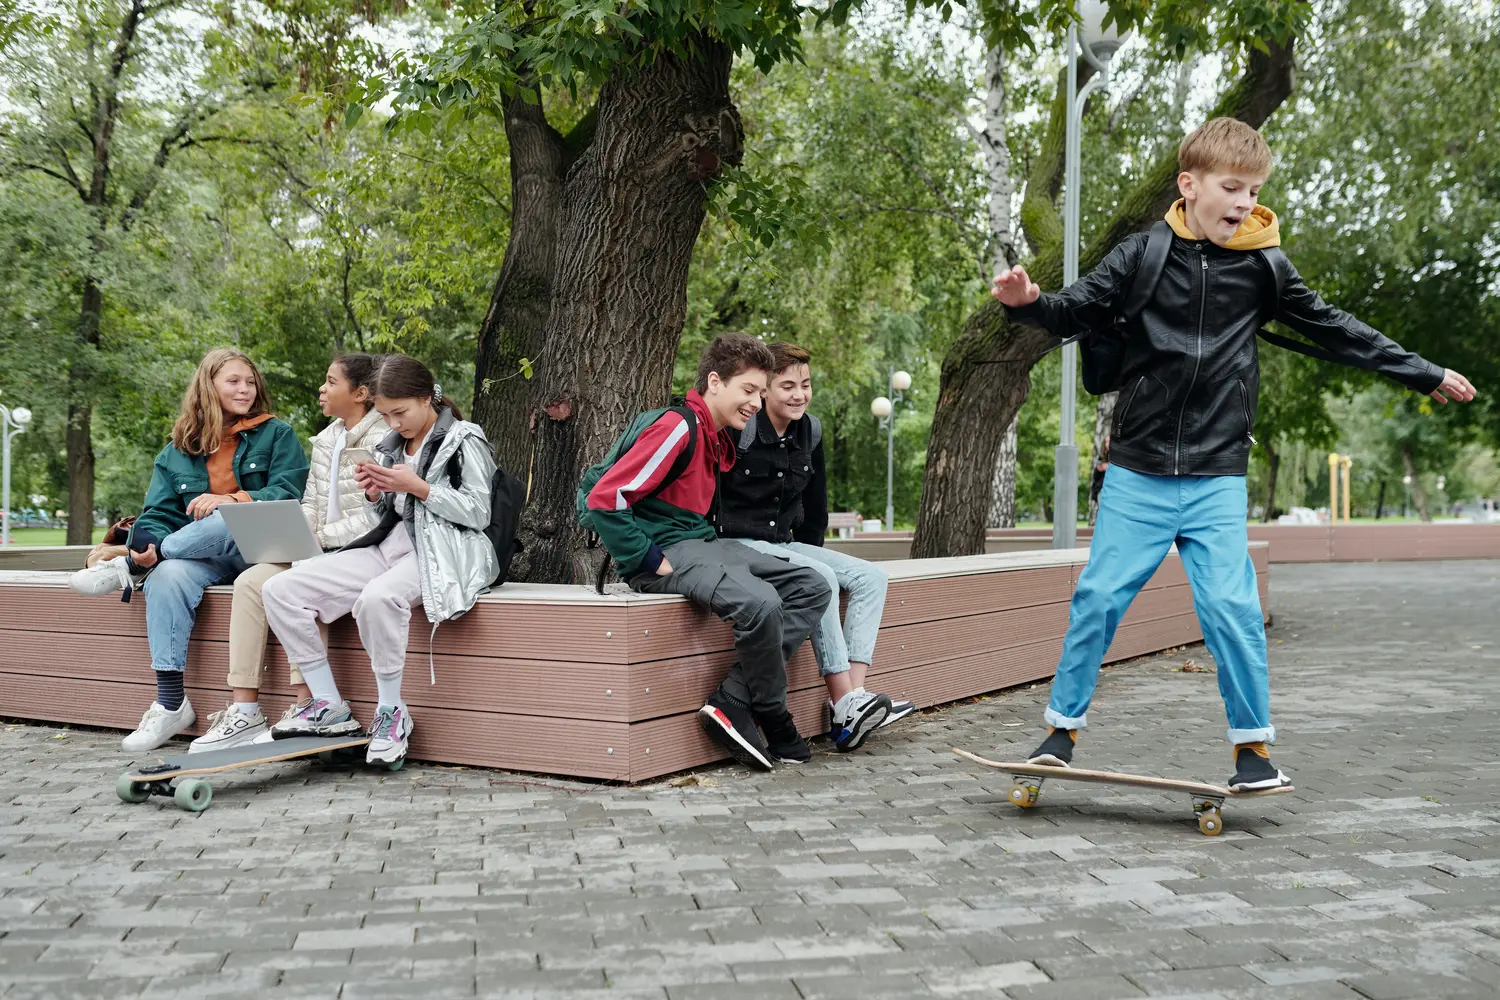 The Best Skateboard For Kids